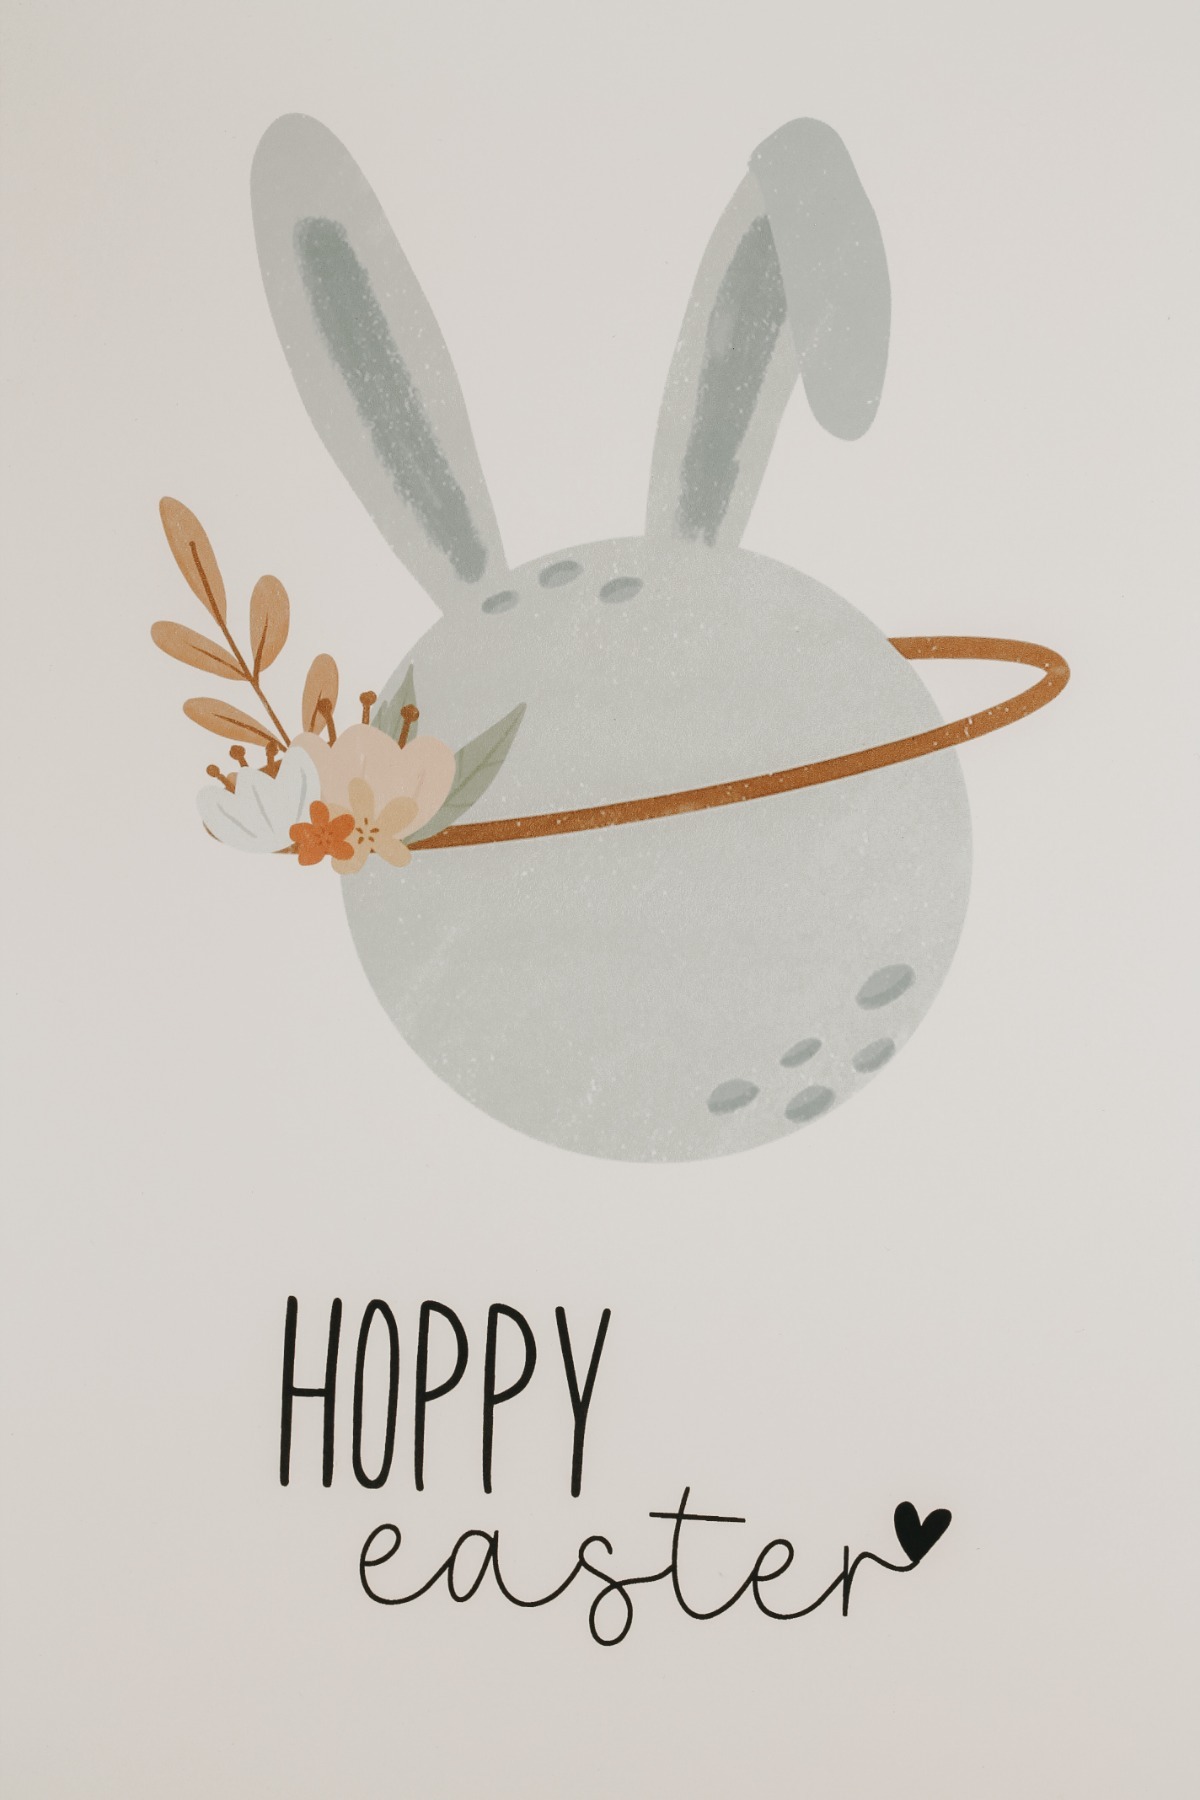 Poster - Hoppy Easter 2